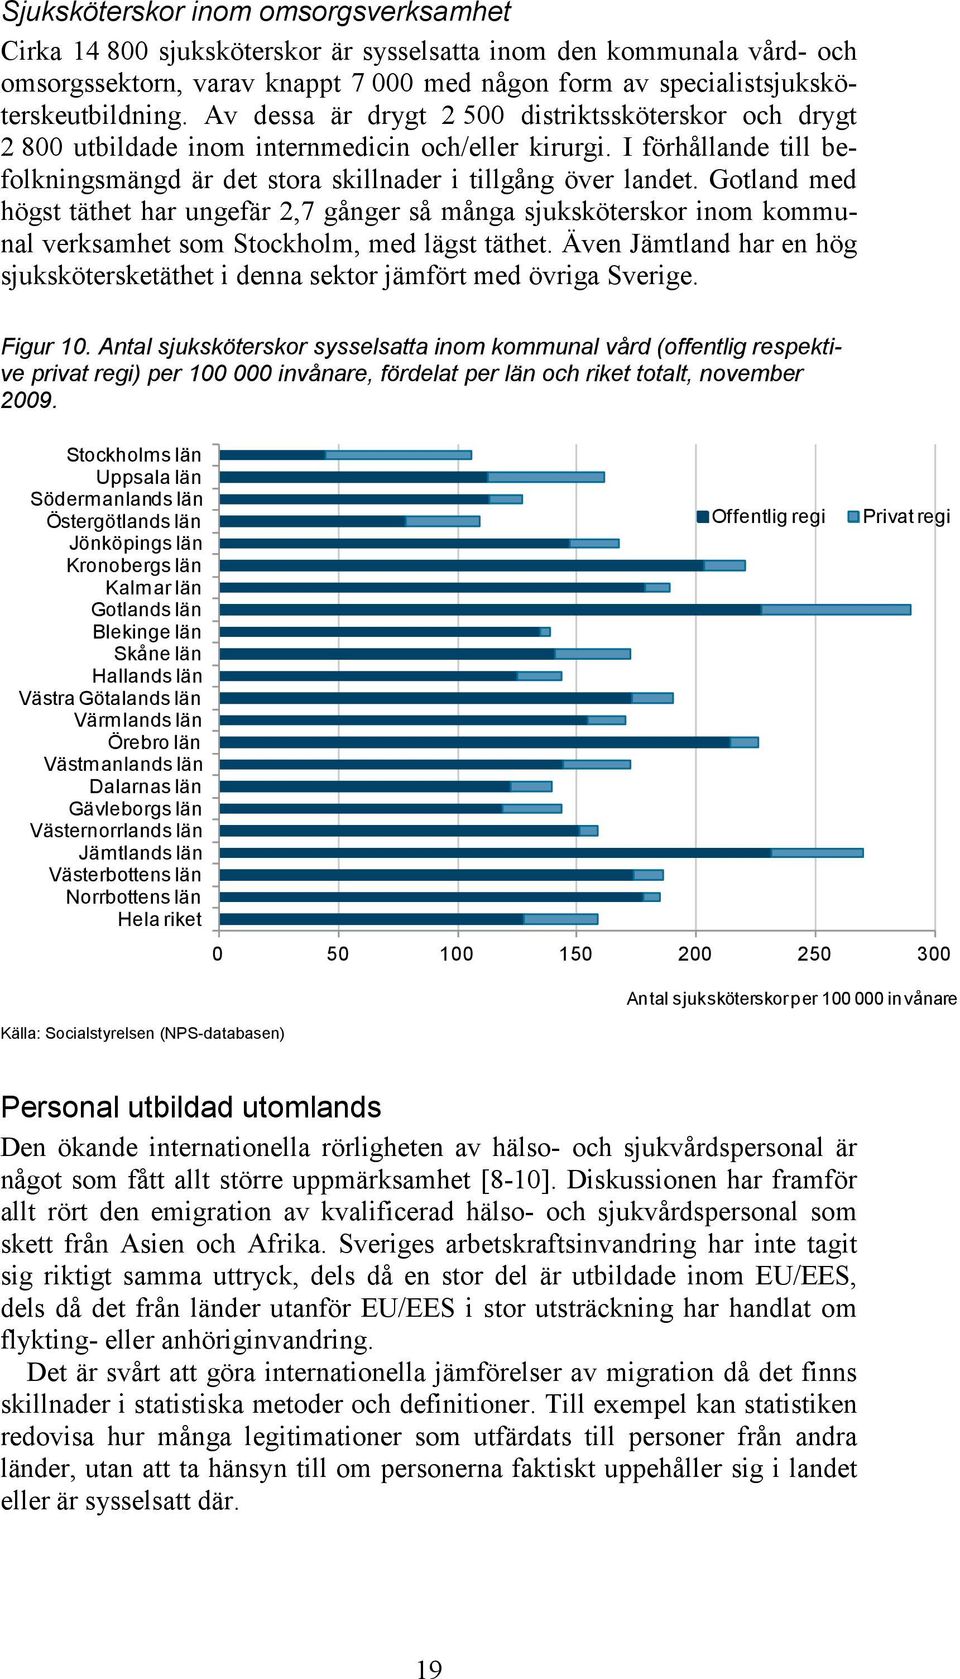 Gotland med högst täthet har ungefär 2,7 gånger så många sjuksköterskor inom kommunal verksamhet som Stockholm, med lägst täthet.